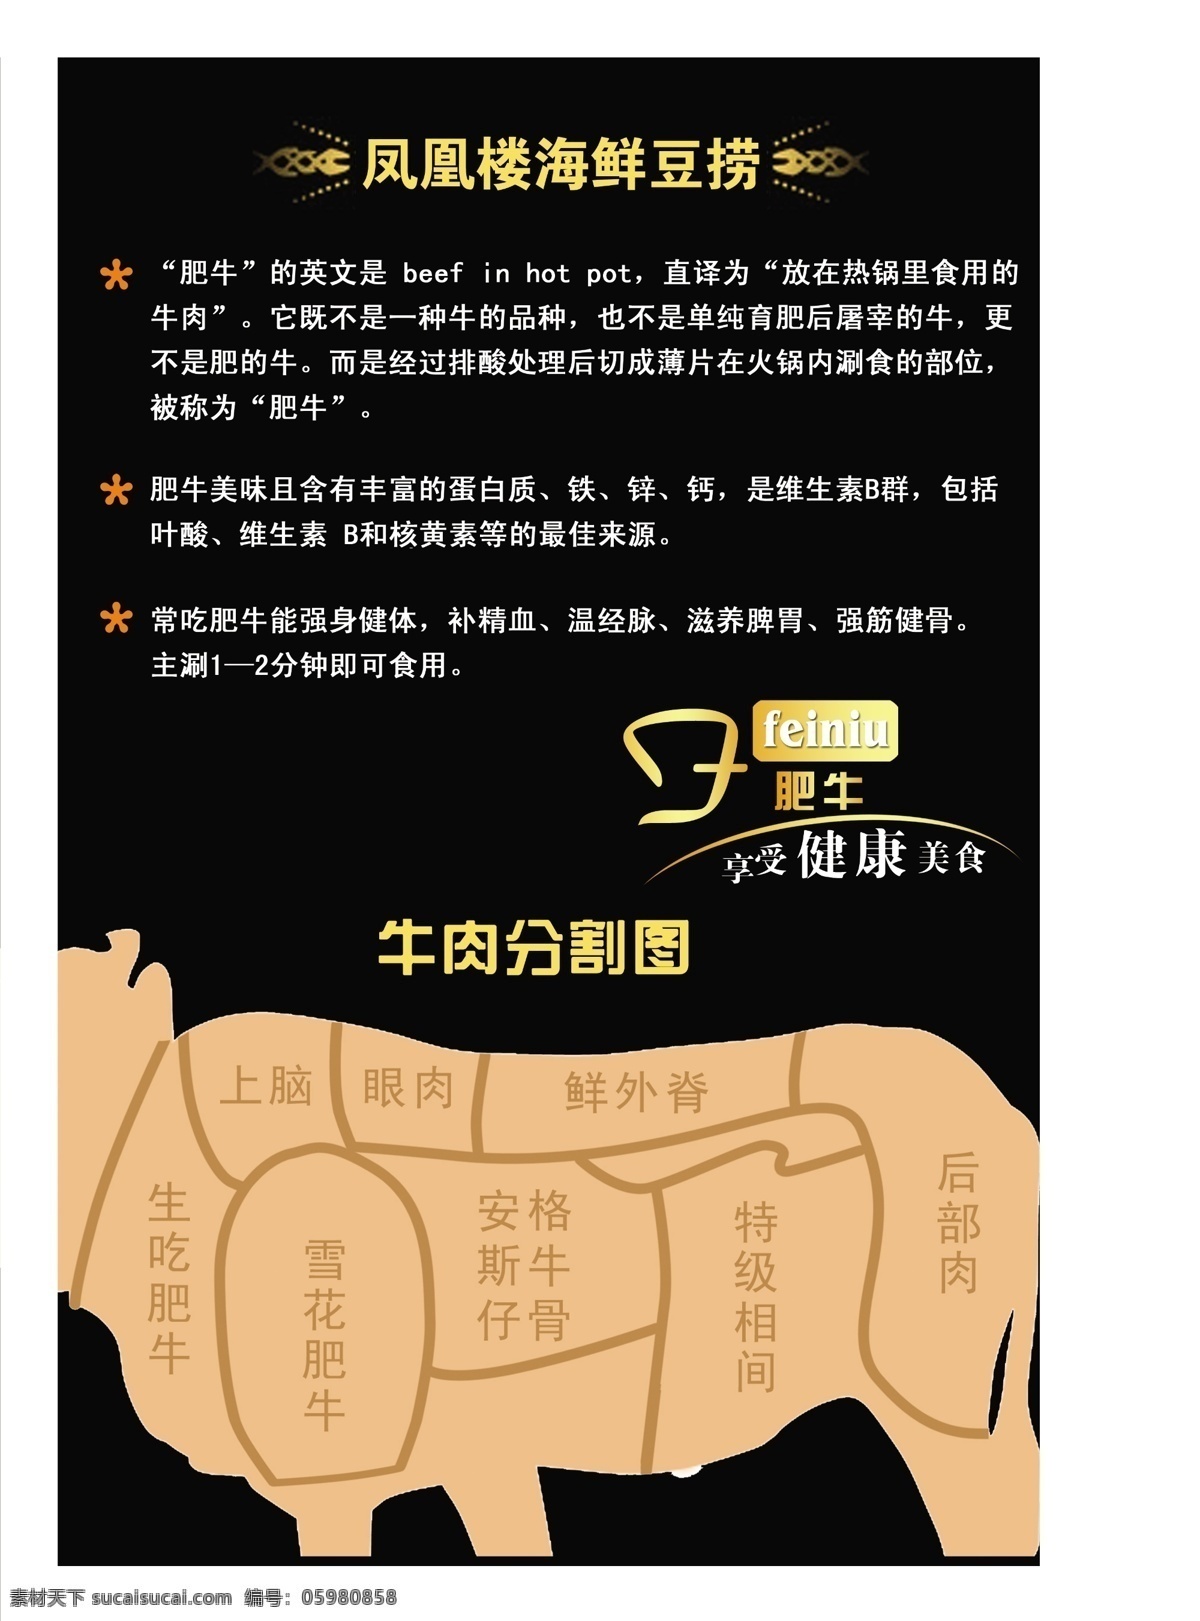 牛肉分割图 牛肉图 黑色背景 黄色 牛图 菜单菜谱 广告设计模板 源文件